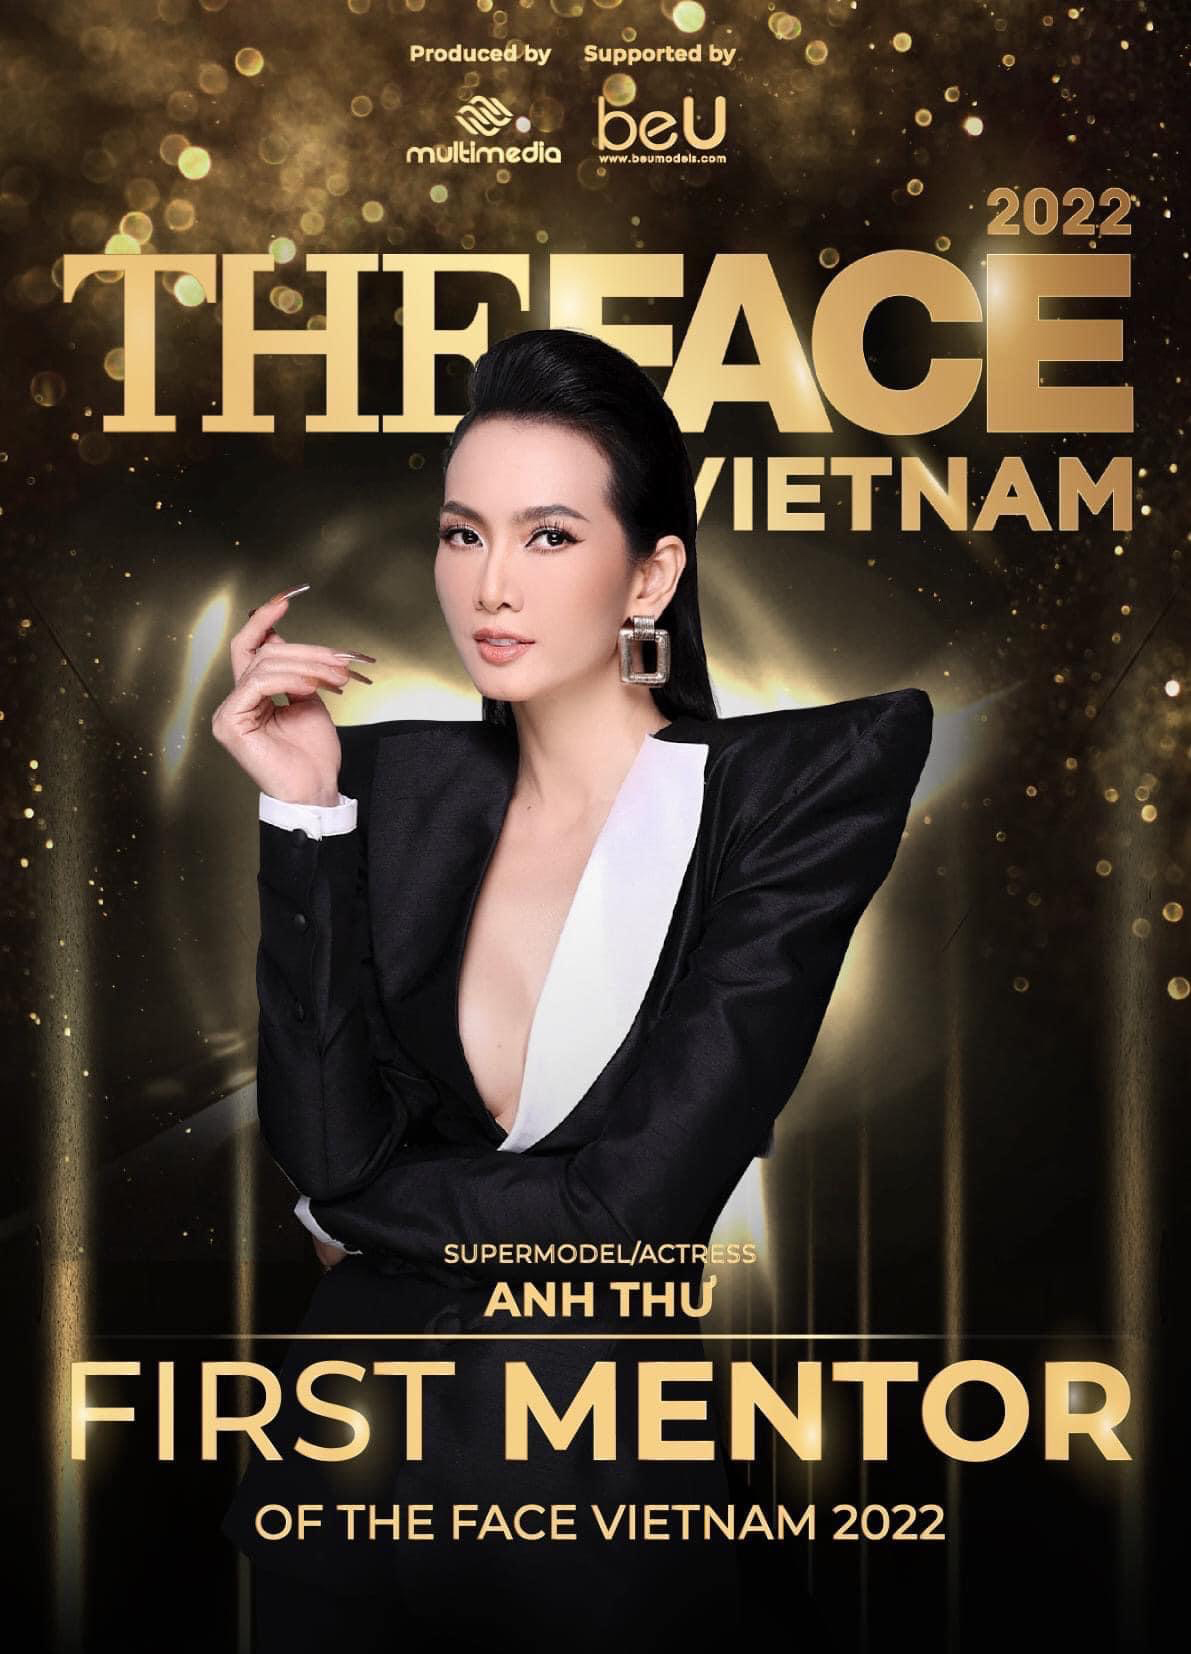 Harper's Bazaar_The Face Vietnam 2022 host Nam Trung và huấn luyện viên Anh Thư_4